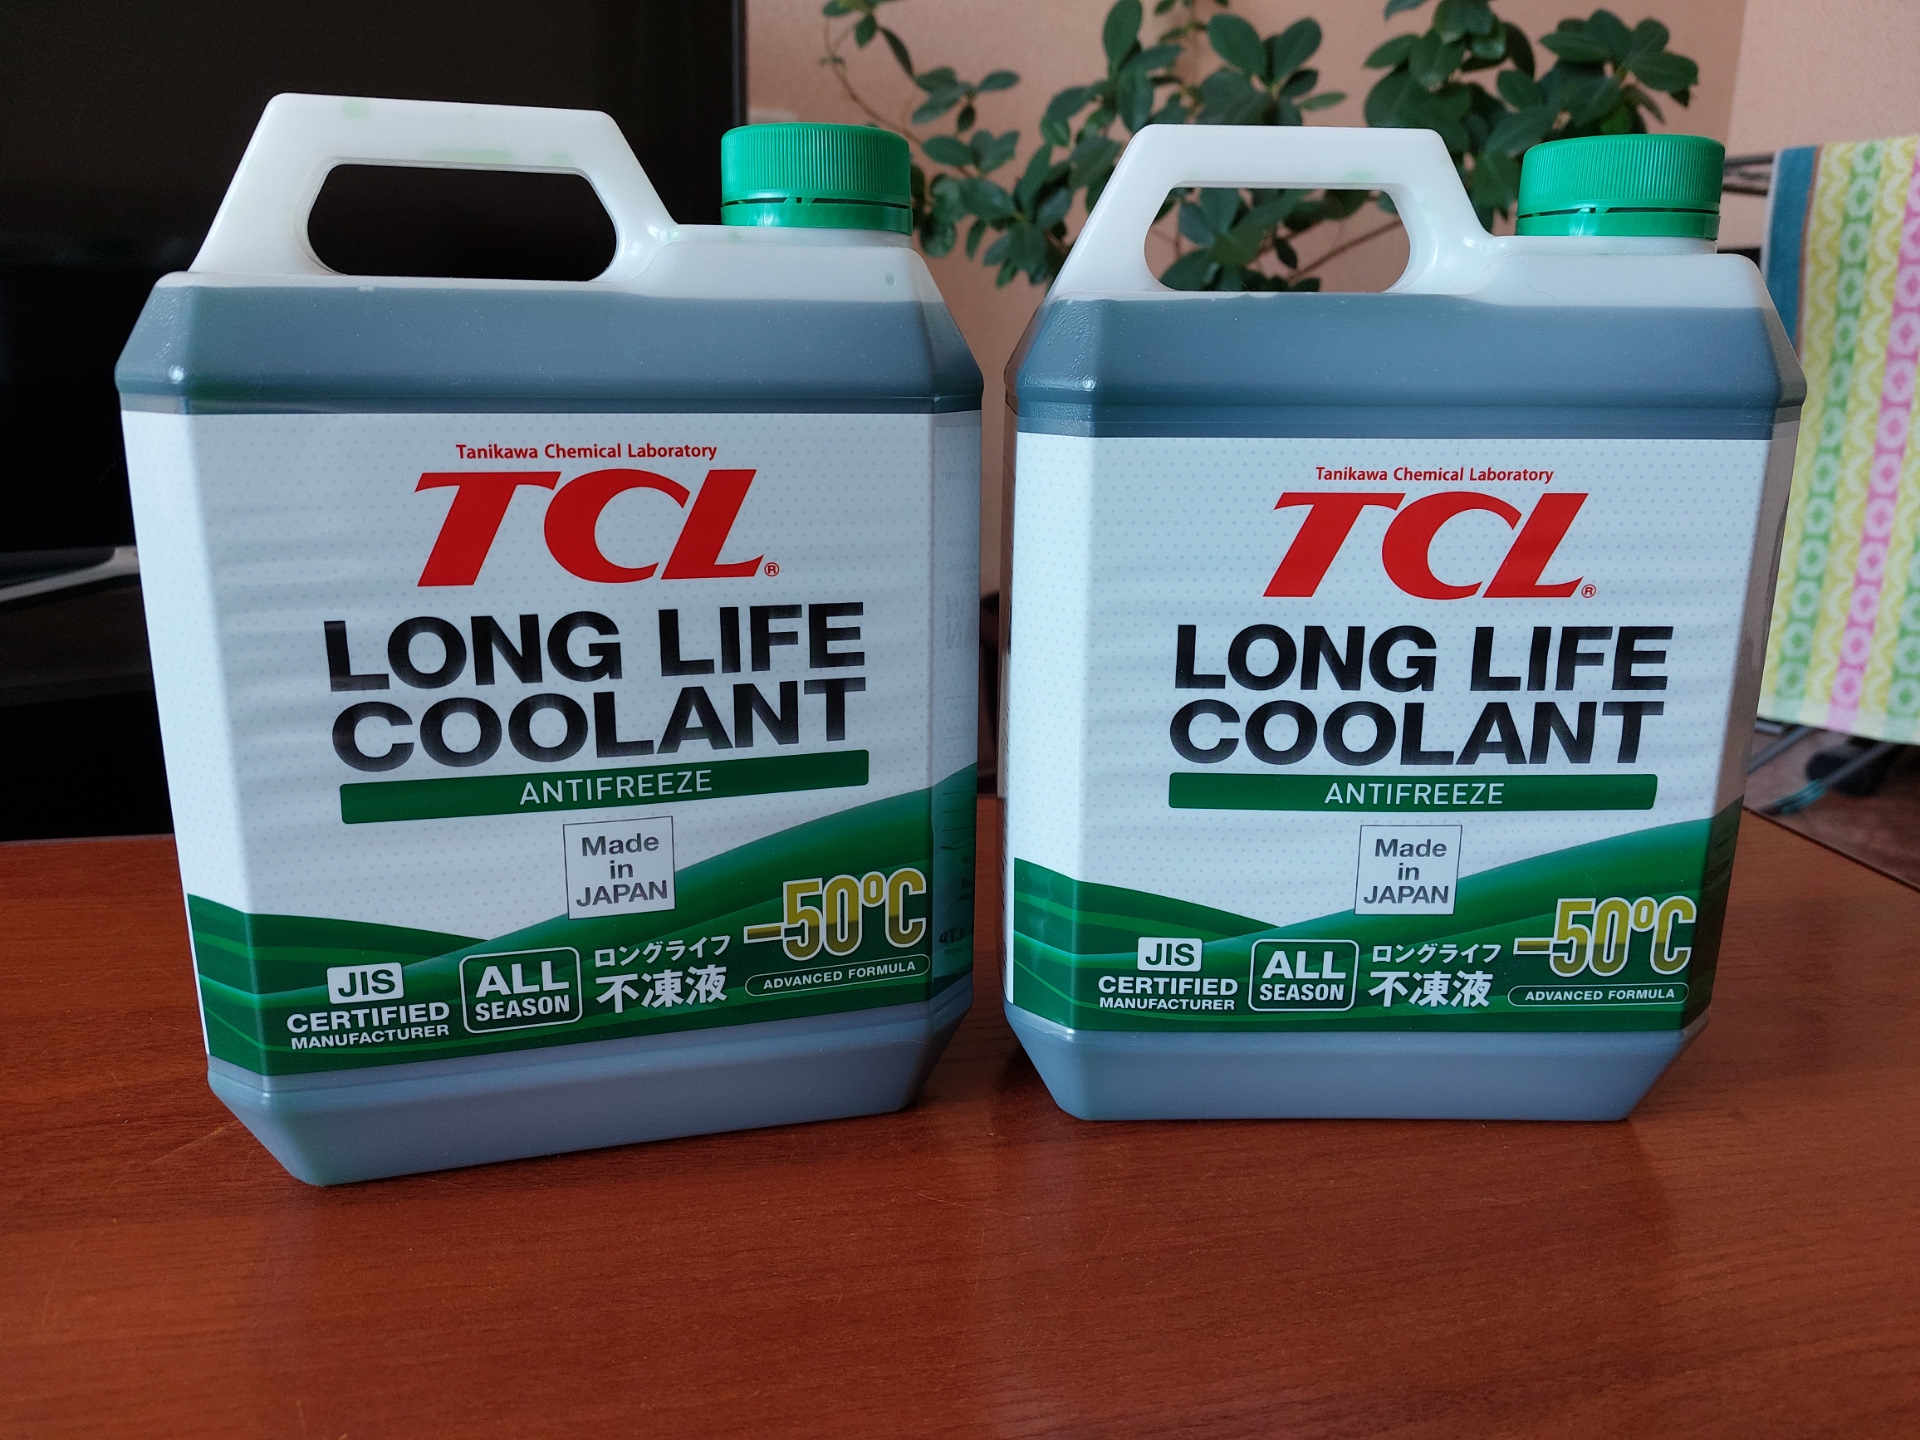 Tcl long life coolant. TCL long Life Coolant Green. Антифриз TCL long Life Coolant LLC, зеленый. Антифриз ТСЛ -50. TCL long Life Coolant Green -50°c.